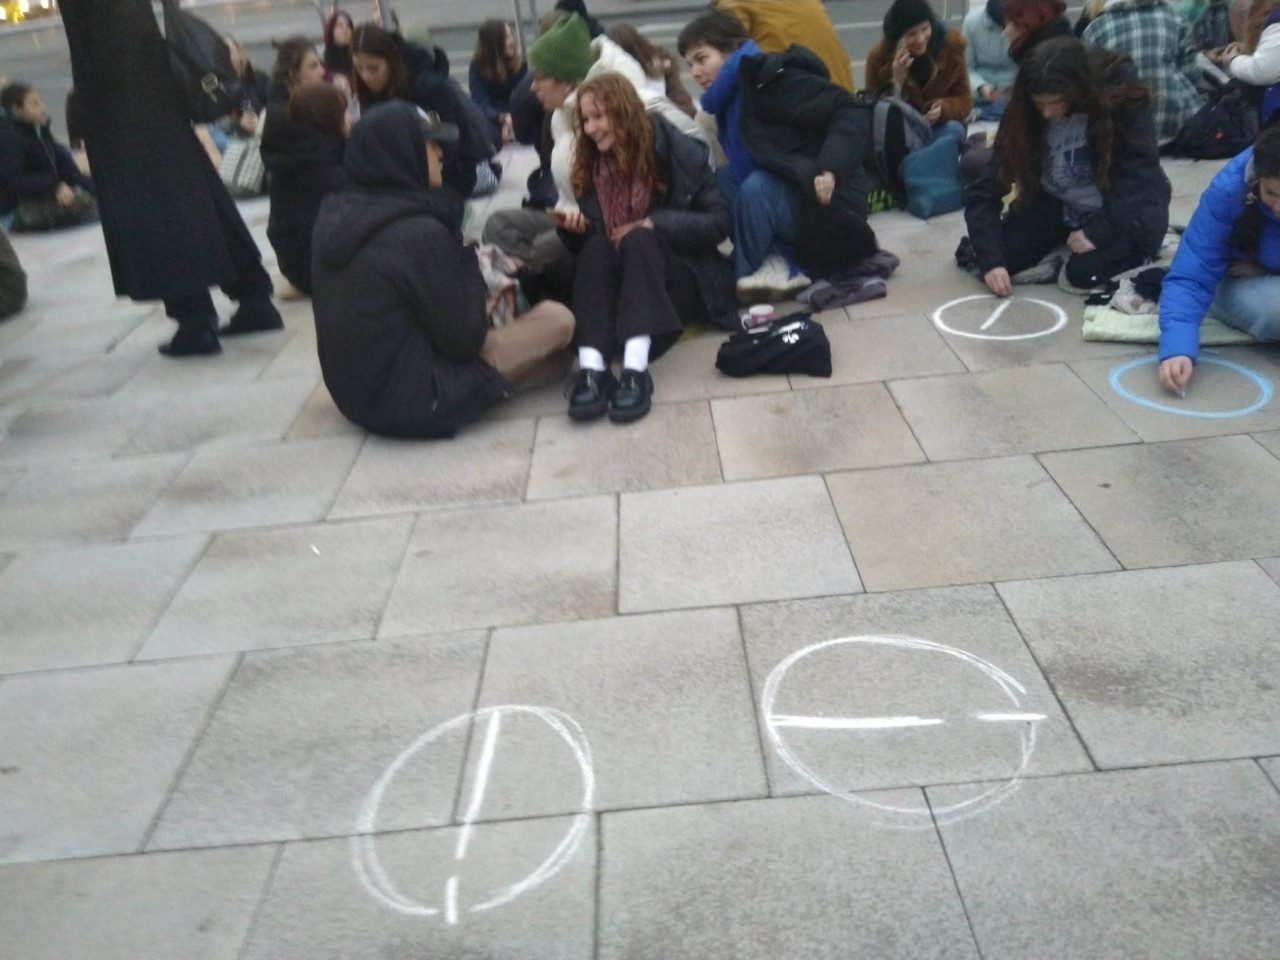 Tiltakozás. Ülősztrájk az oktatás helyzete miatt a Blaha Lujza téren 2022.12.08-án